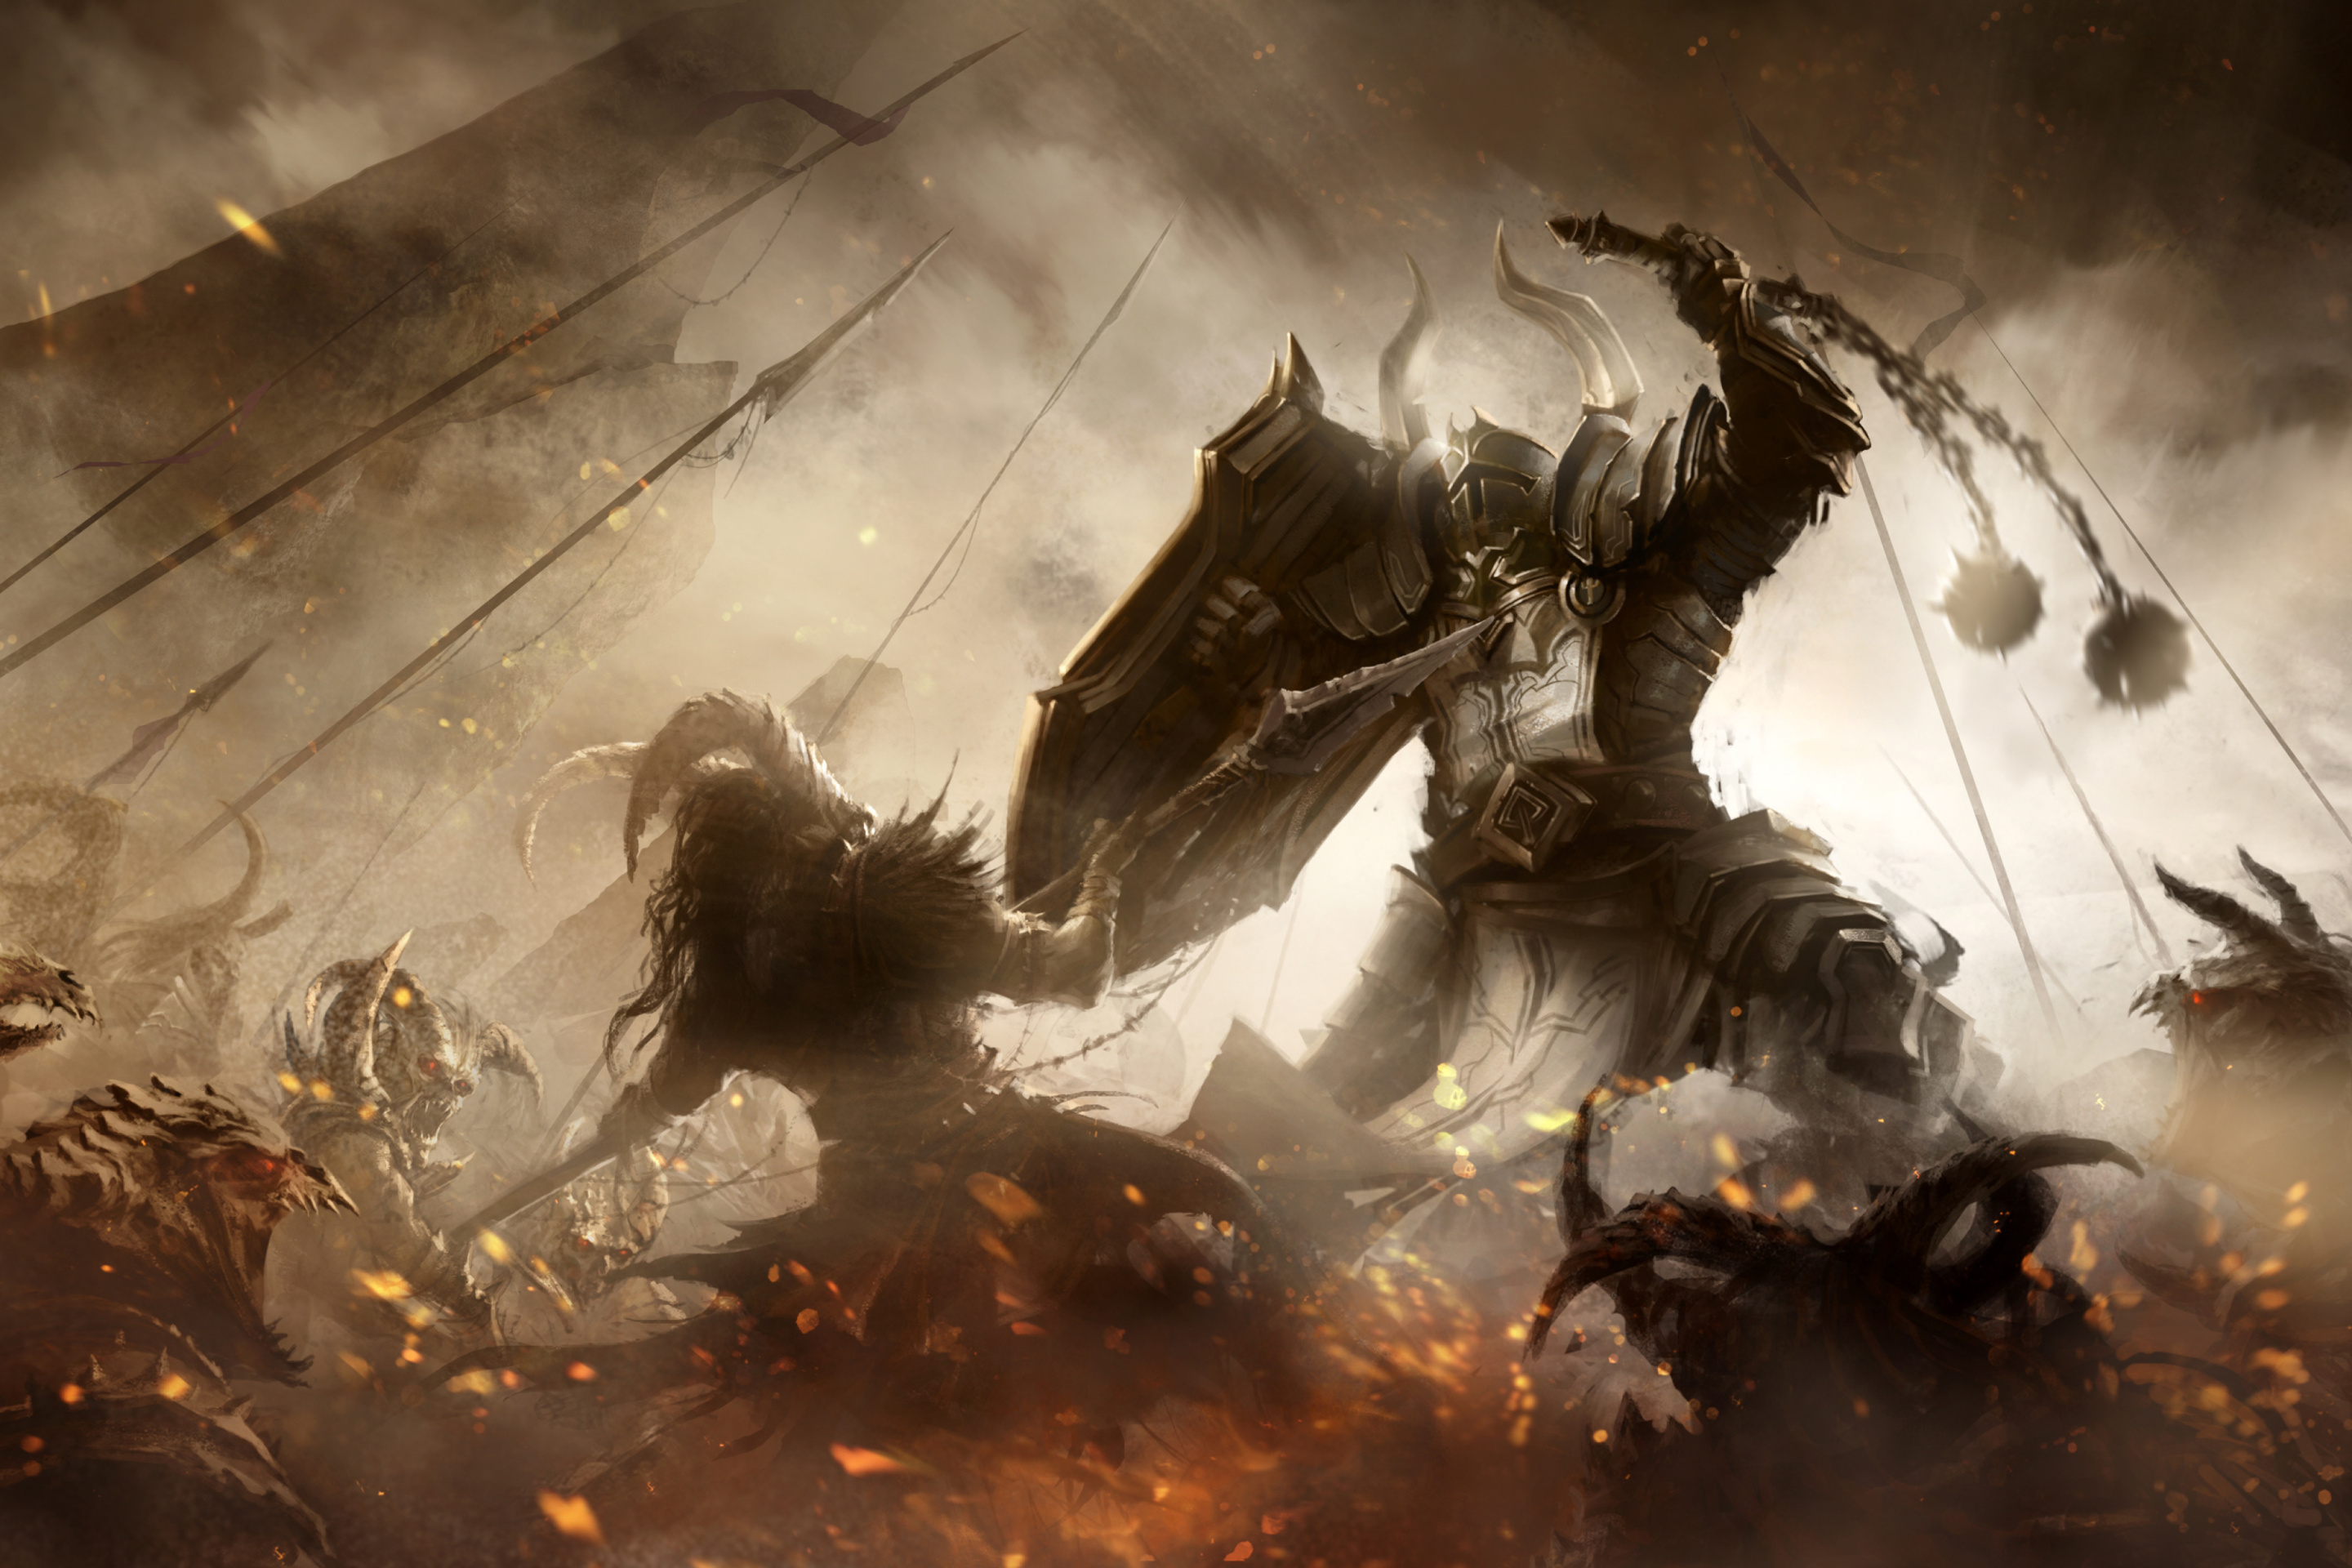 Das Diablo III battle of knights Wallpaper 2880x1920